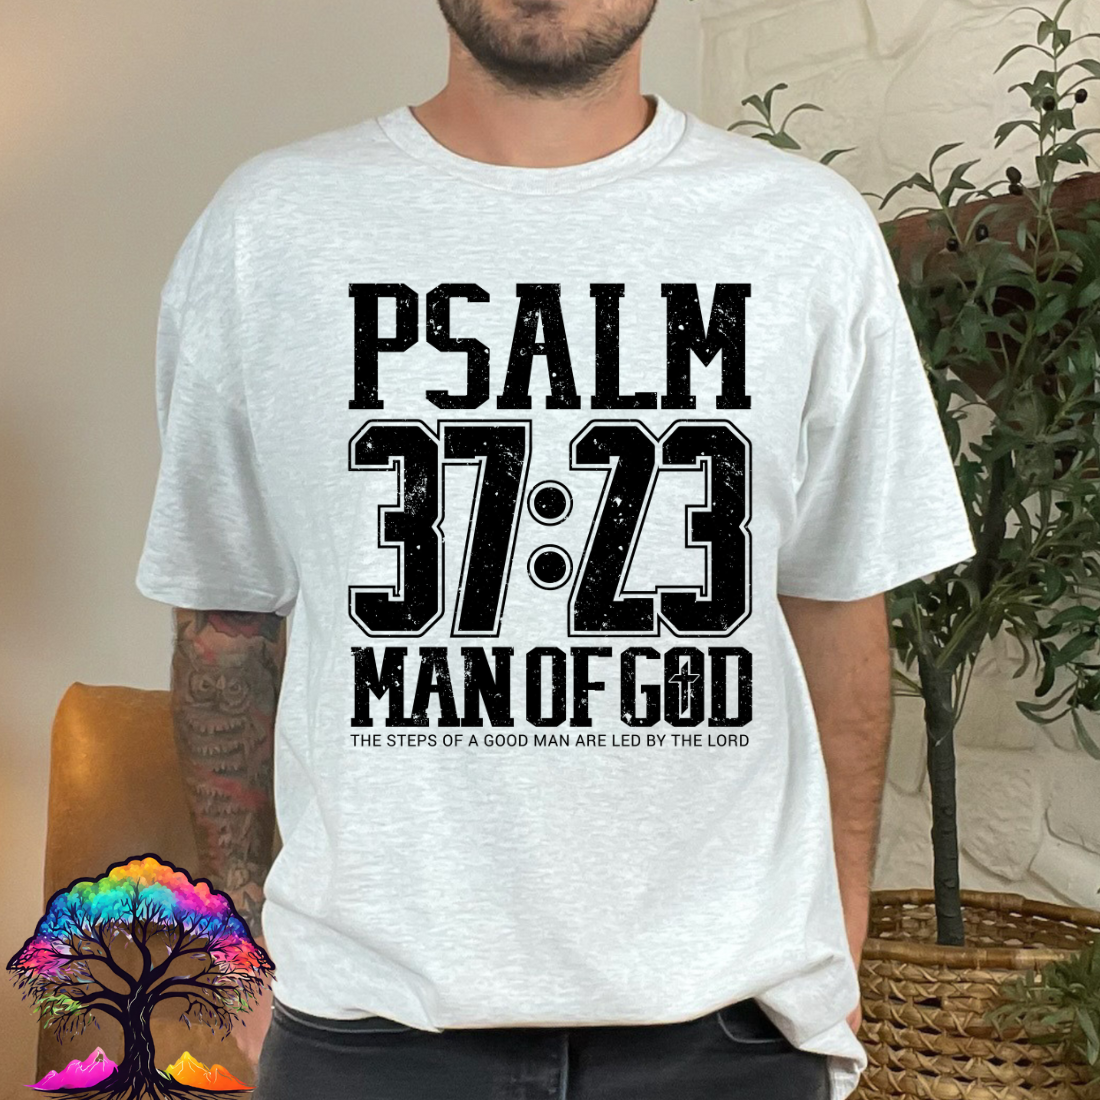 Men's Christian T-shirt- Man of God